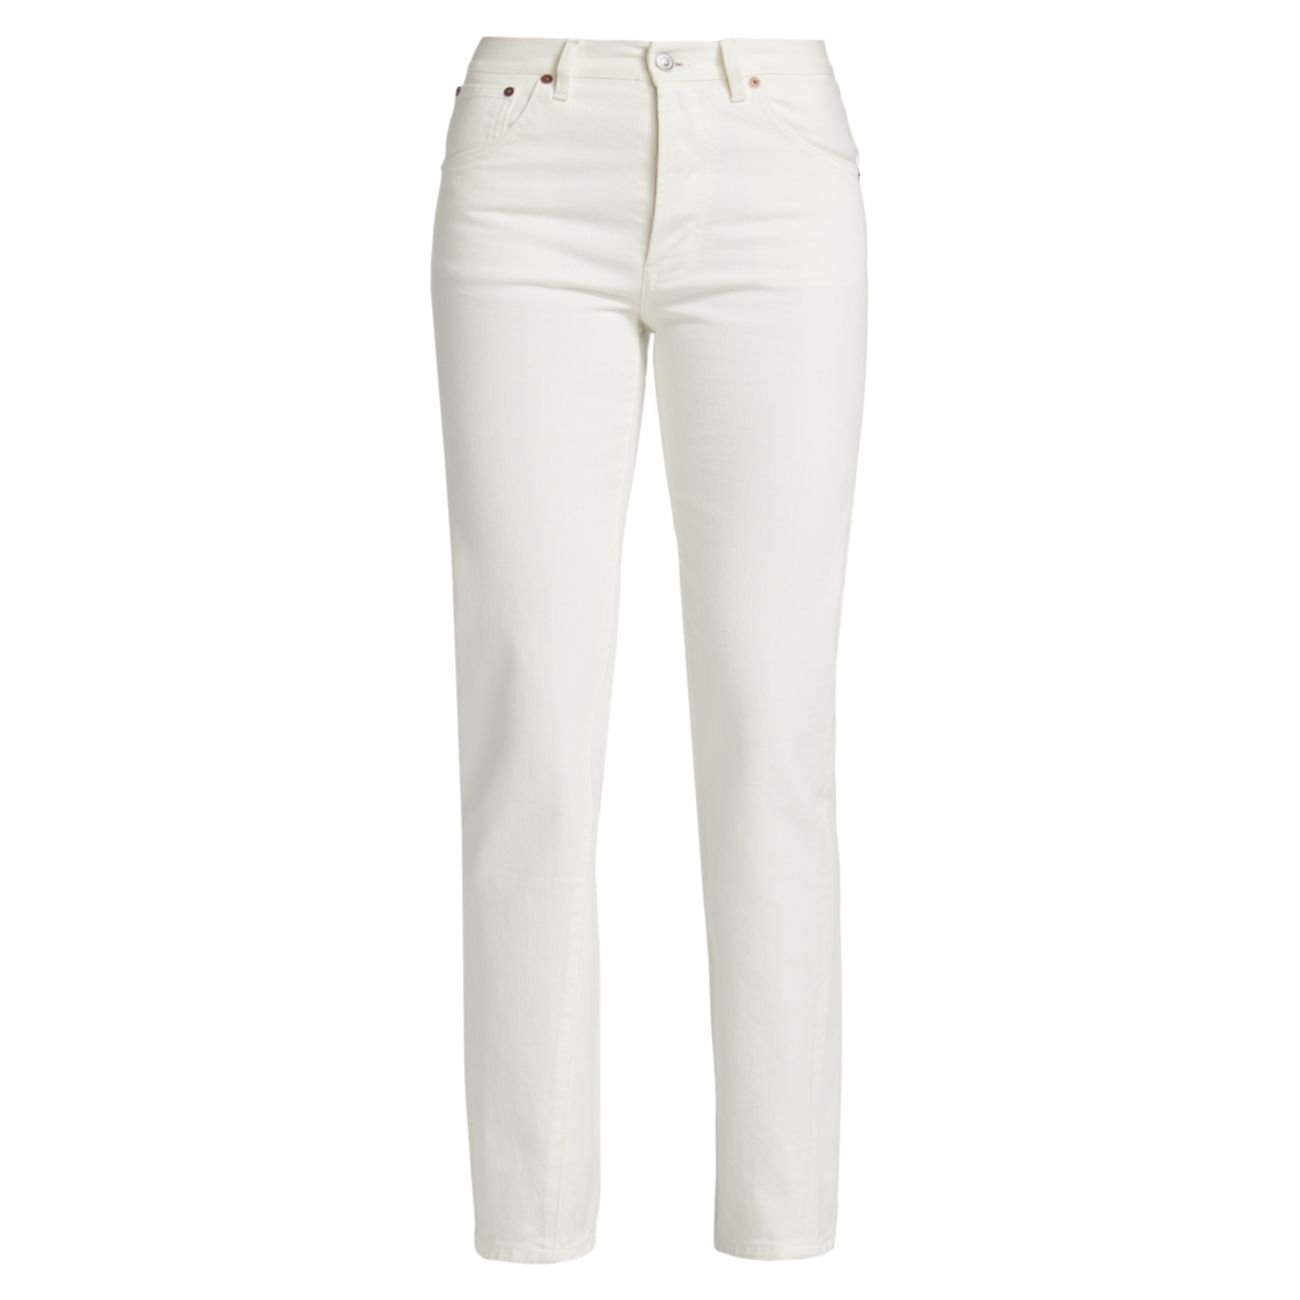 Узкие прямые джинсы Olivia со средней посадкой Victoria Beckham